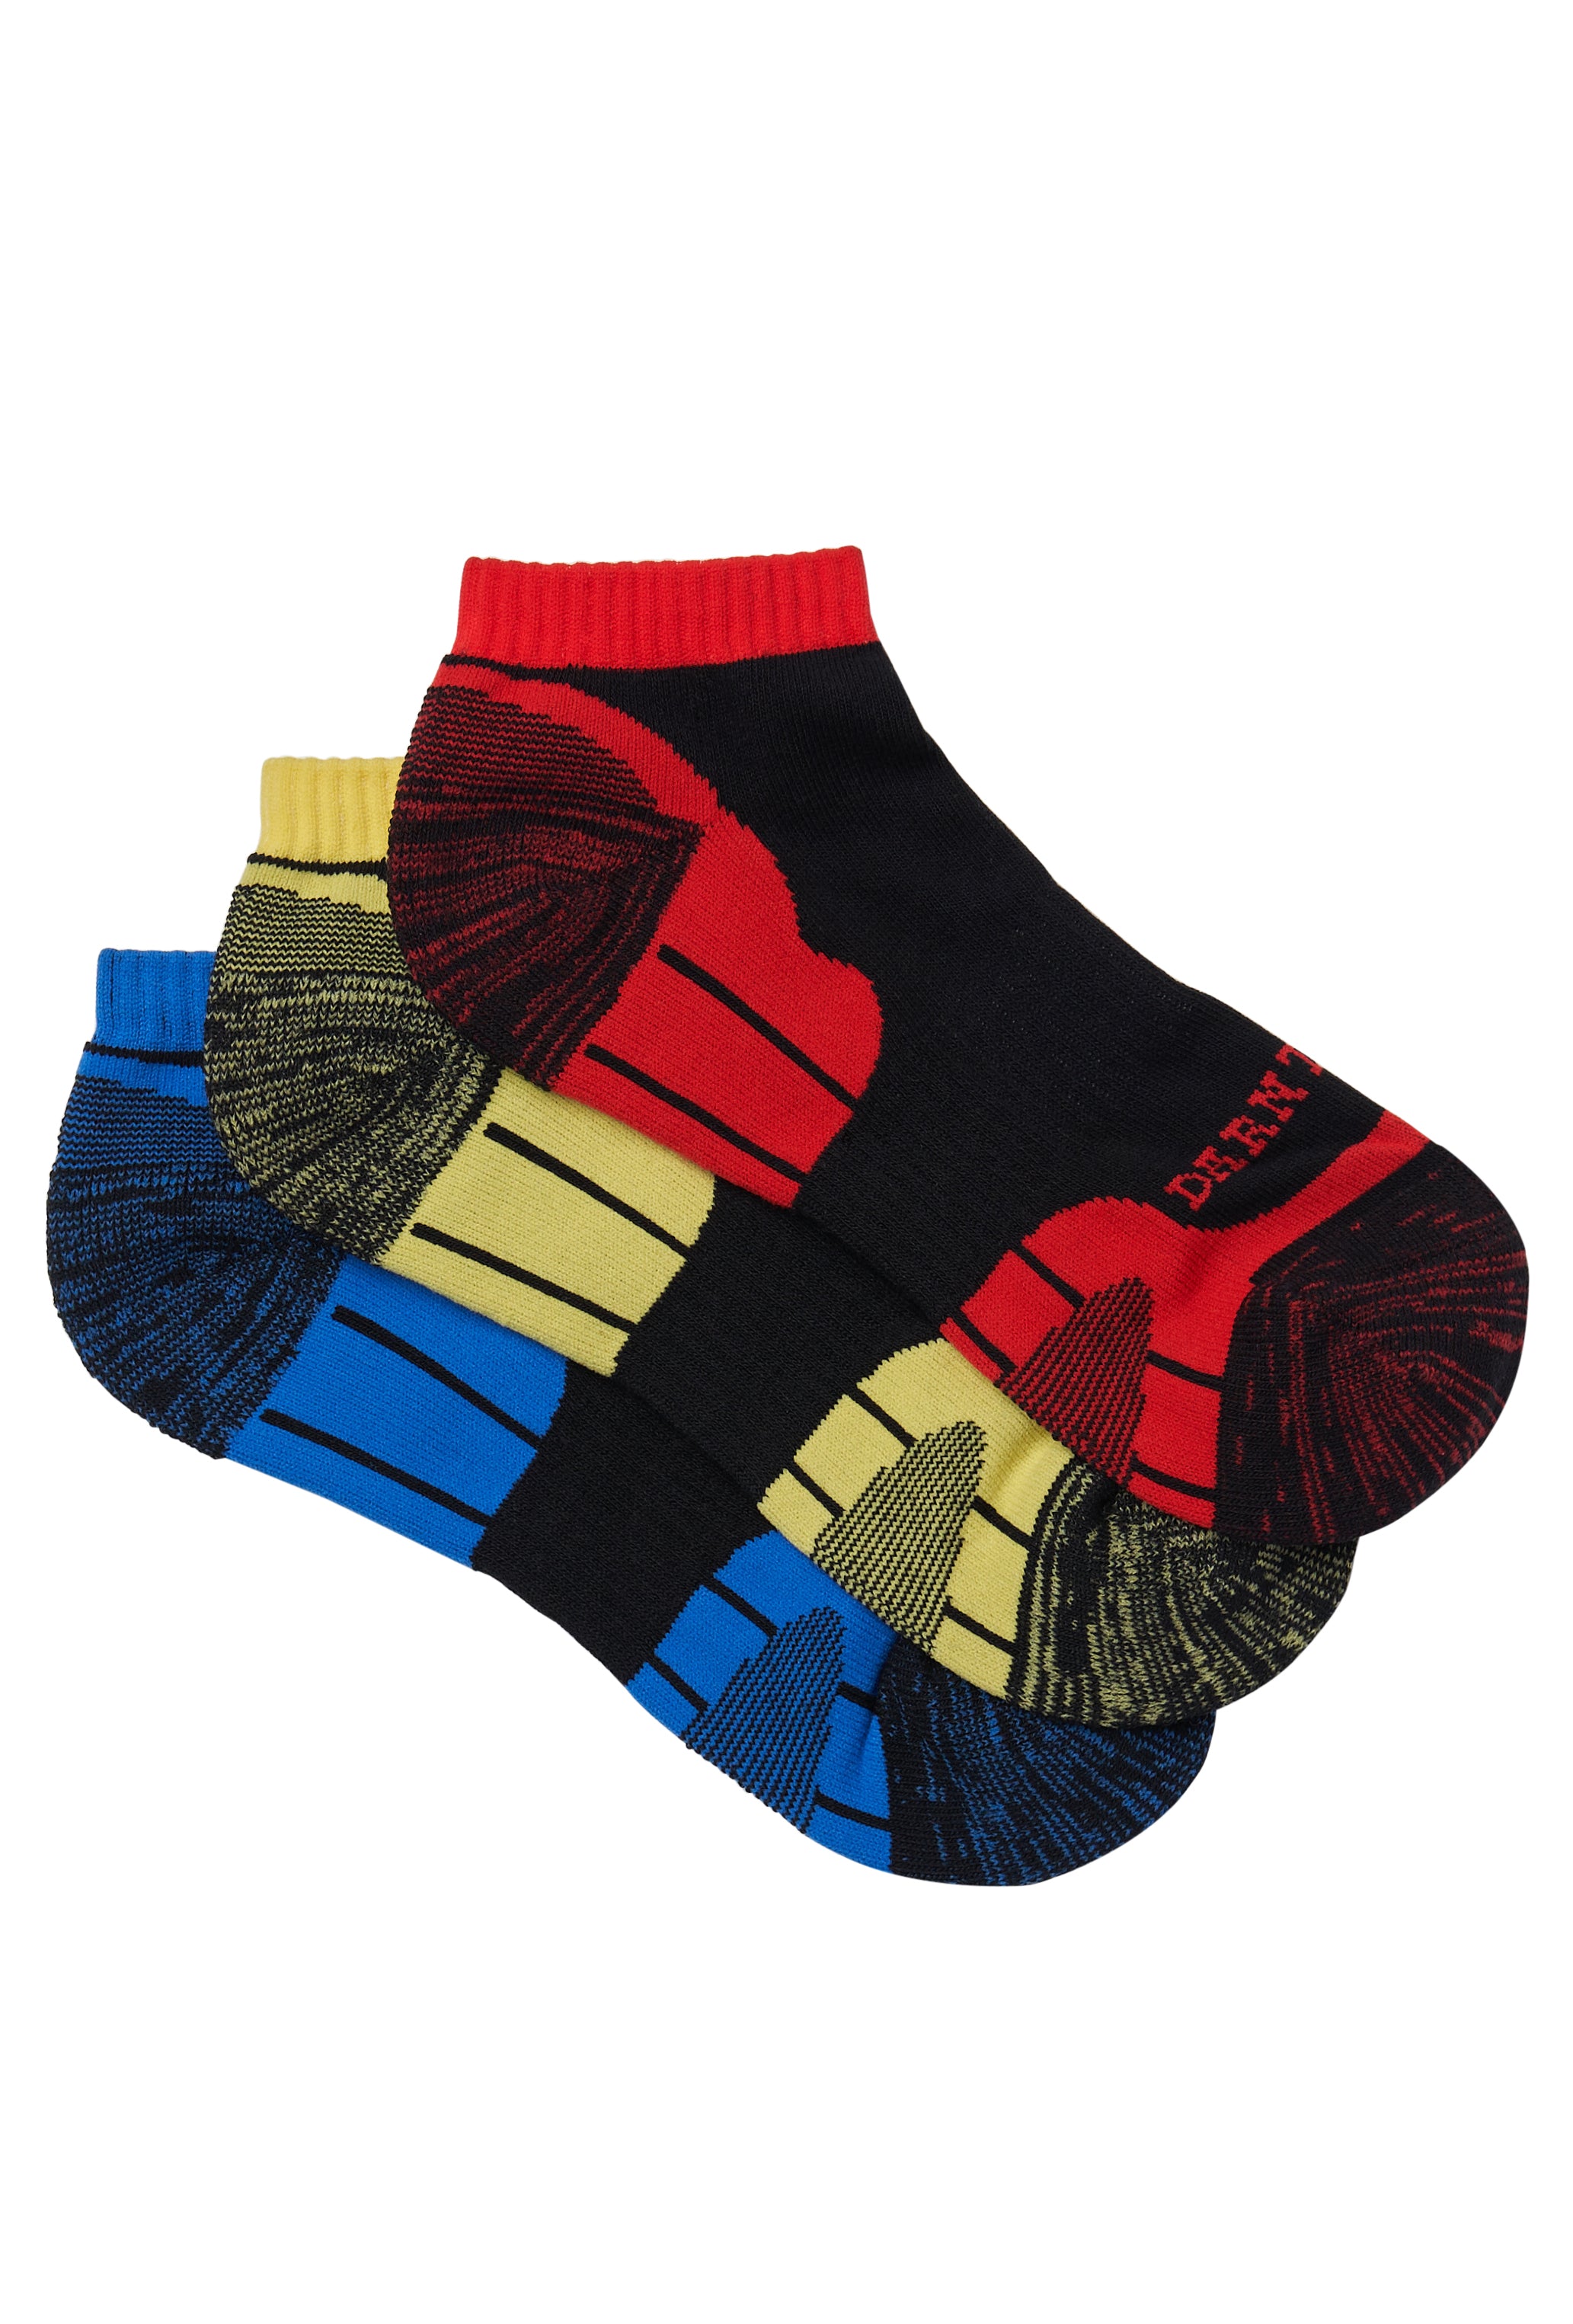 Men's Work Socks & Tradies' Socks – Sock Central